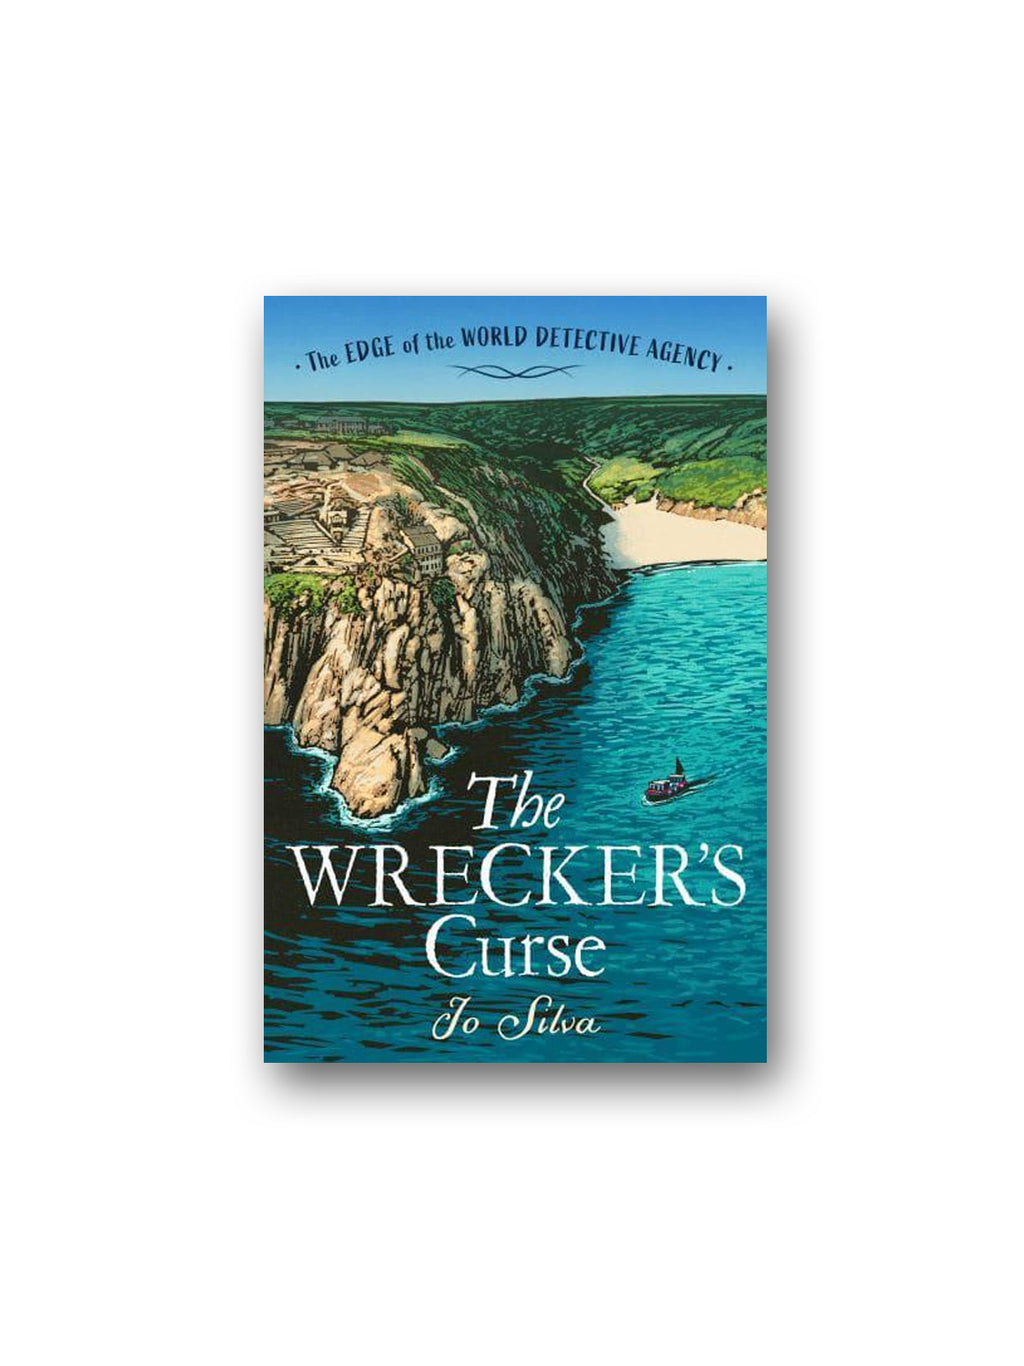 The Wrecker's Curse